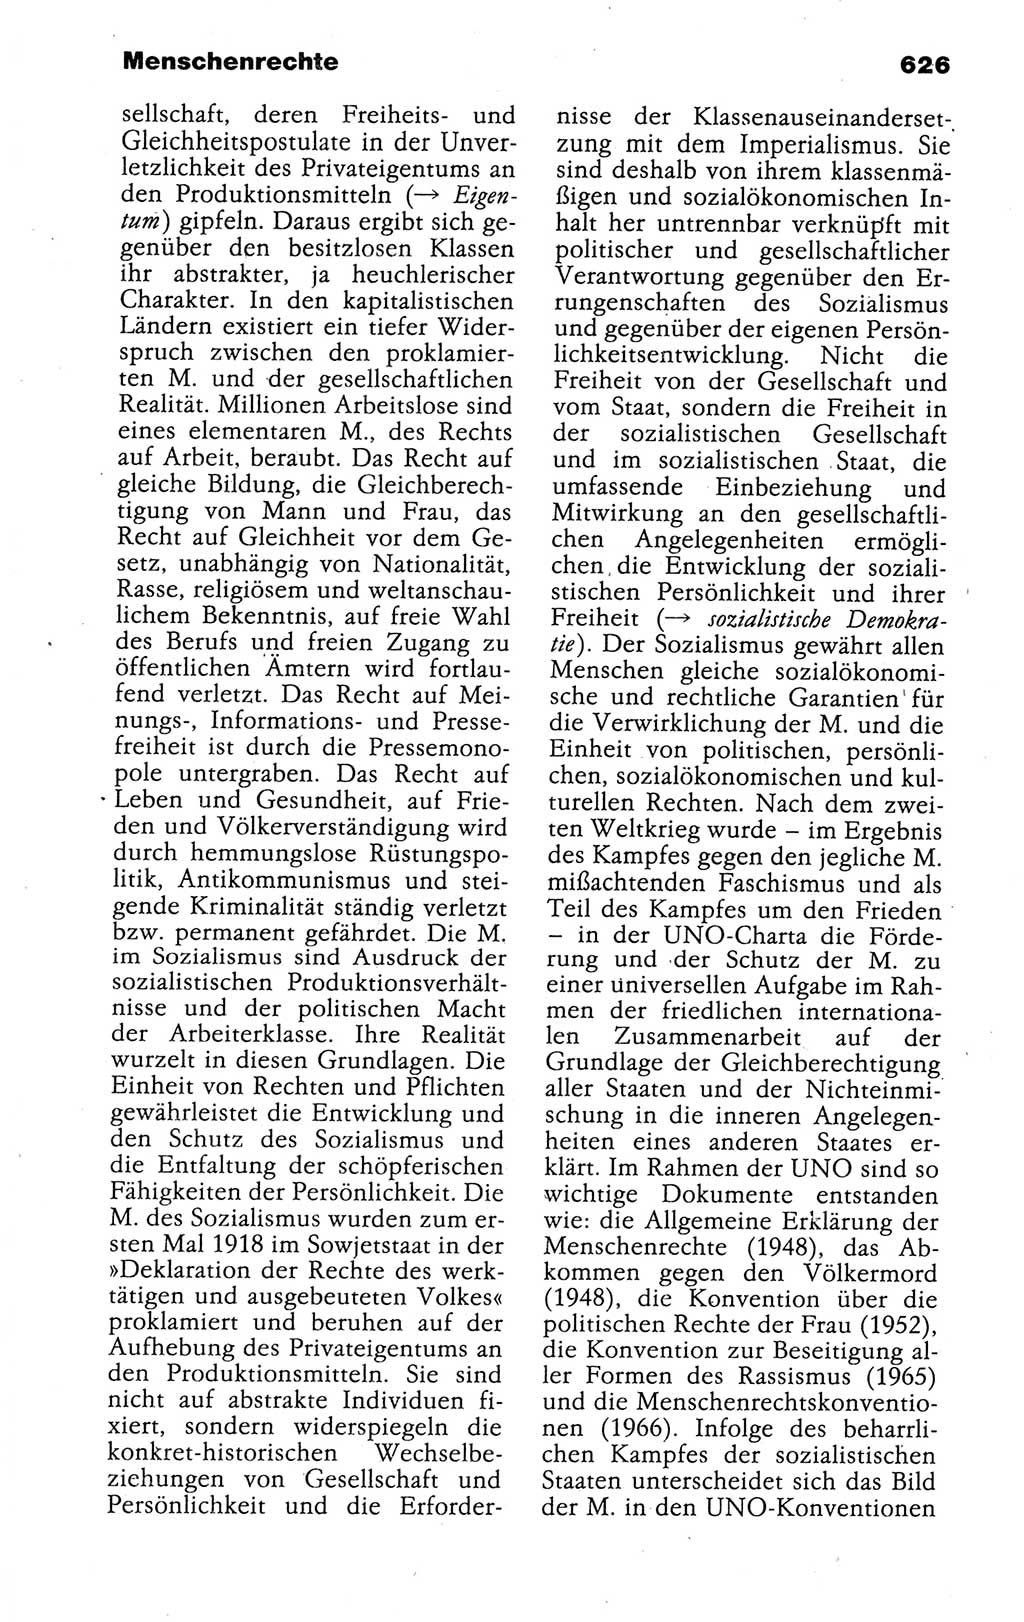 Kleines politisches Wörterbuch [Deutsche Demokratische Republik (DDR)] 1988, Seite 626 (Kl. pol. Wb. DDR 1988, S. 626)